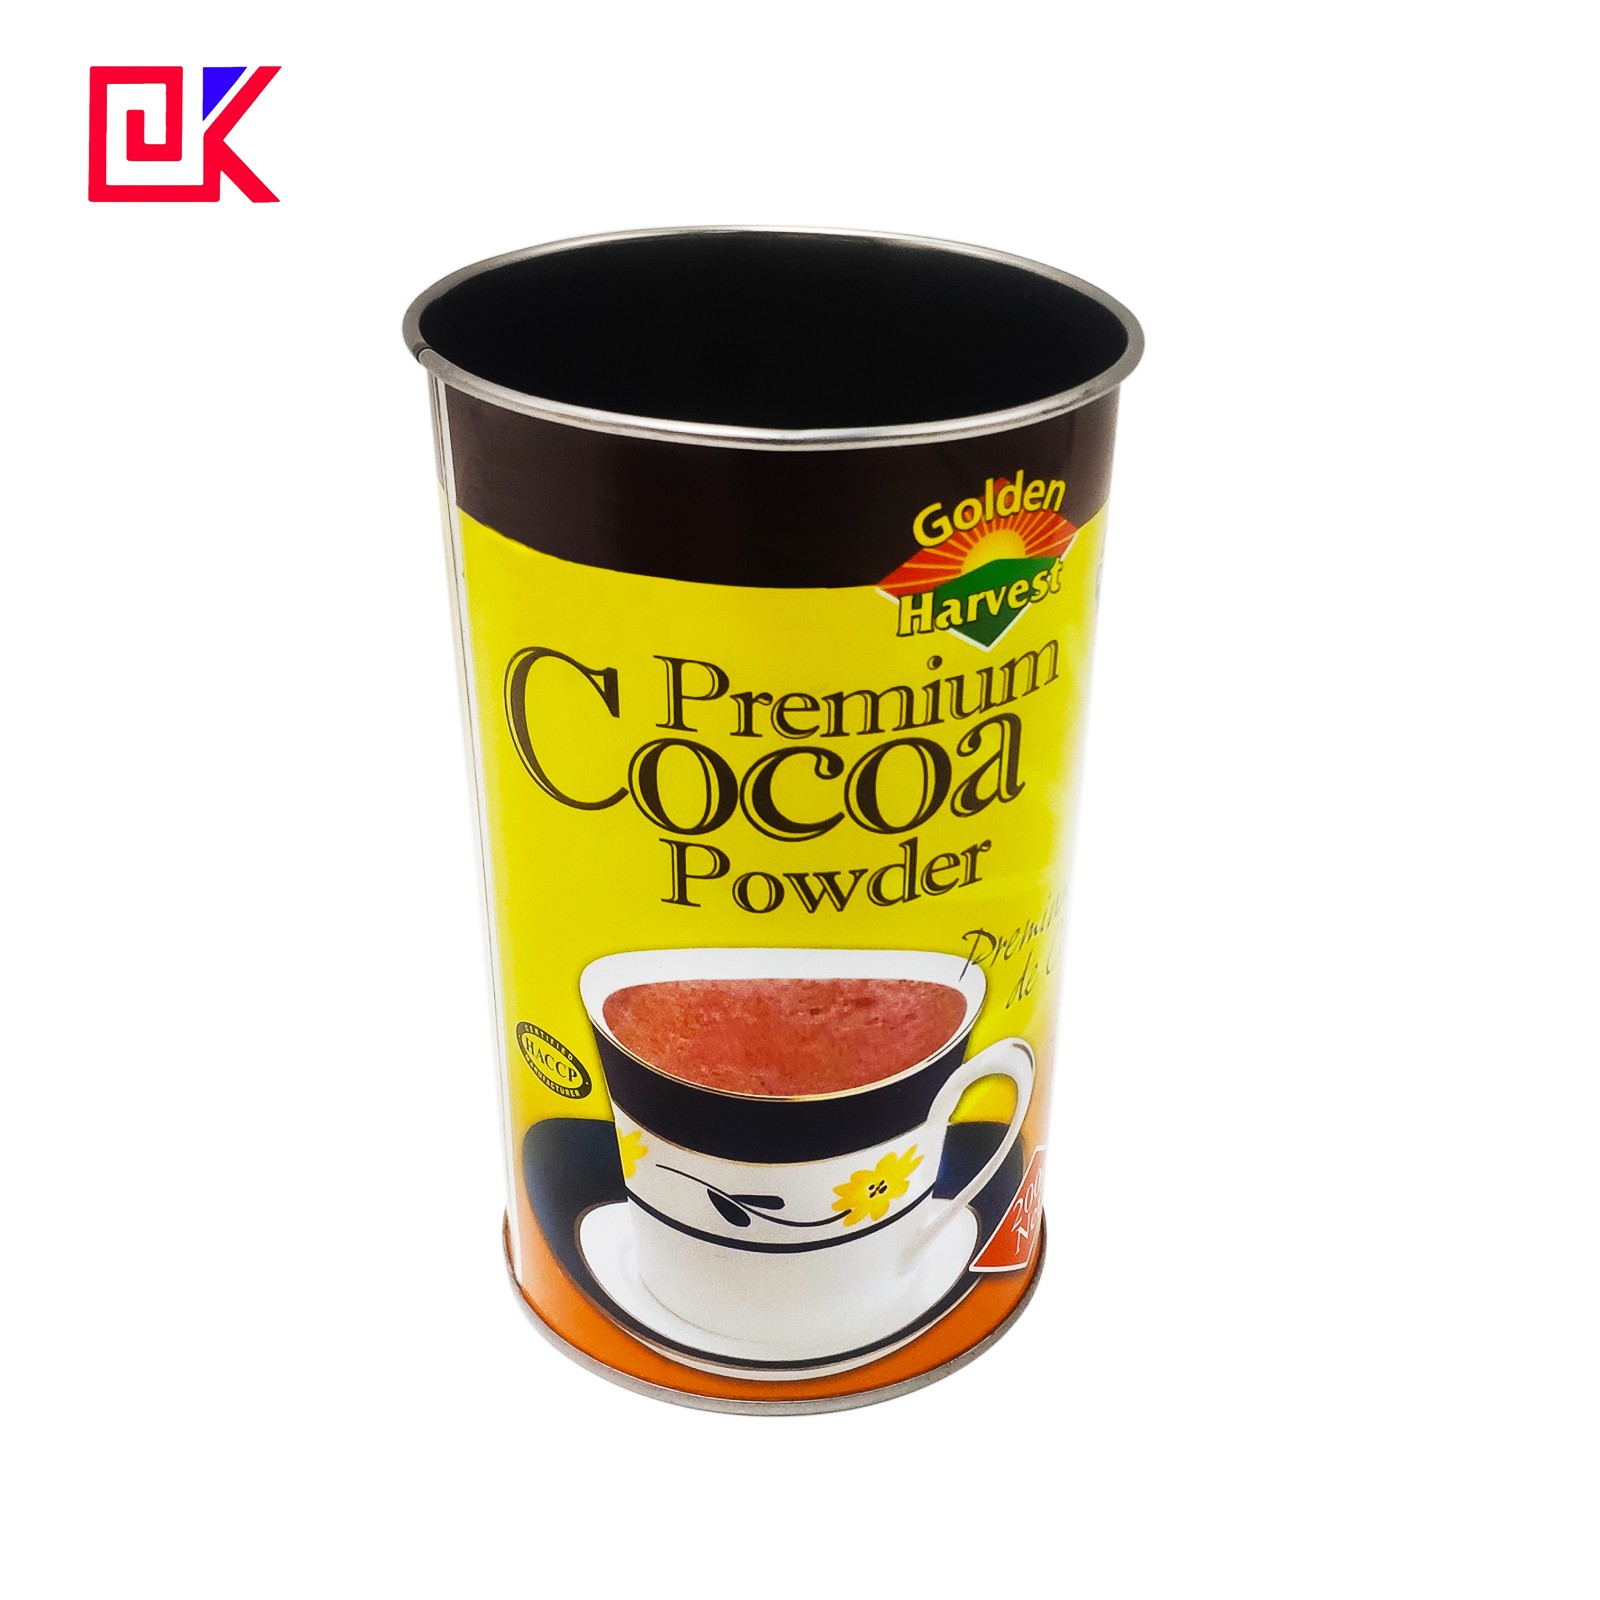 cocoa powder tin cans